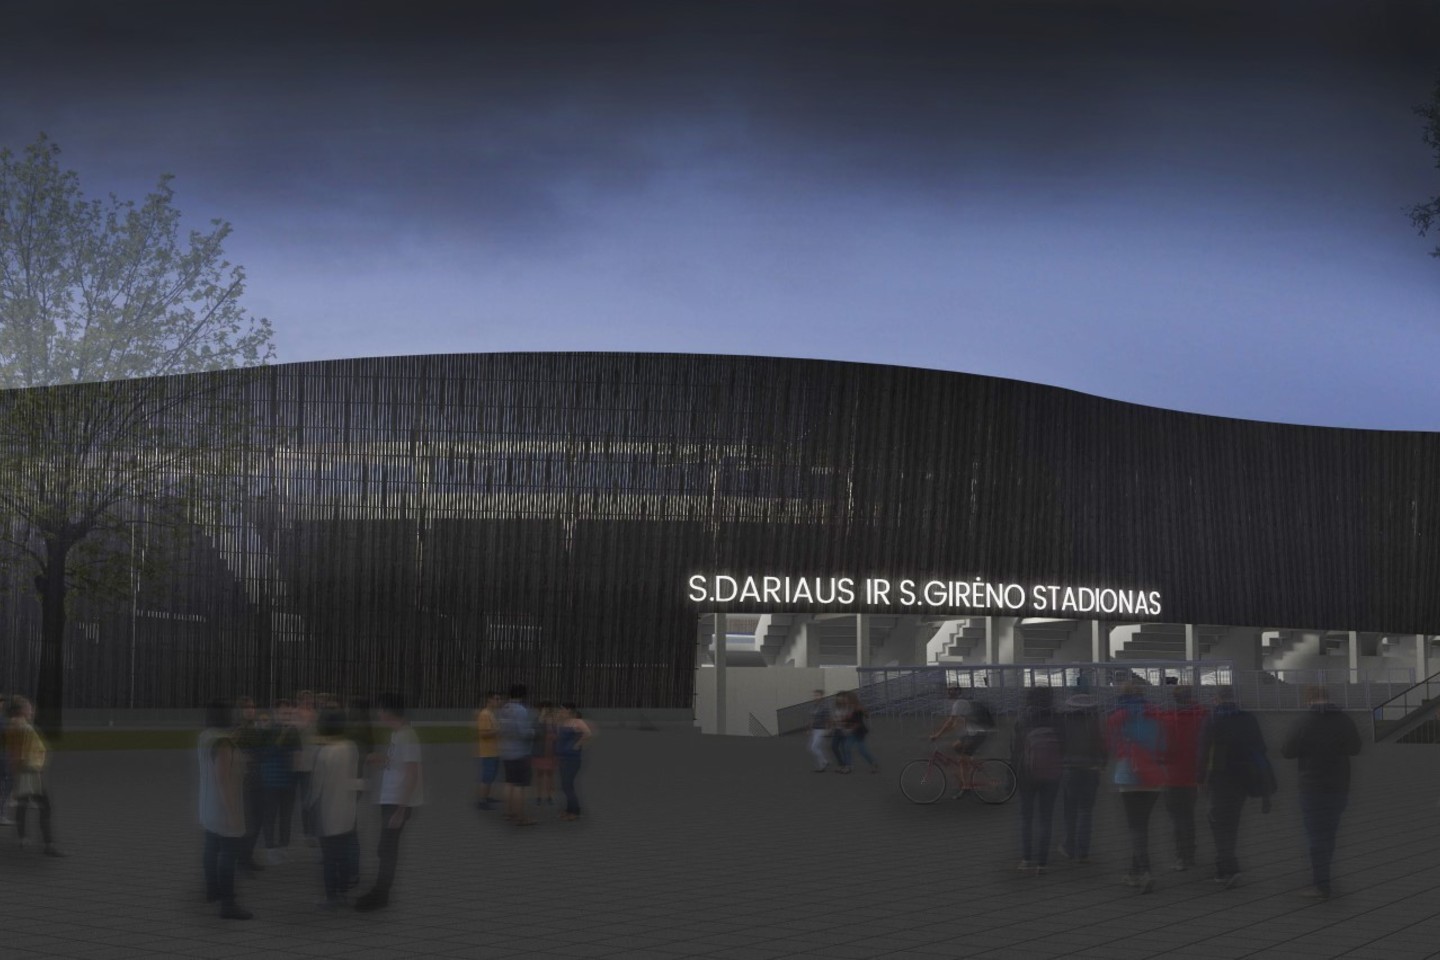 Kauno miesto savivaldybės įmonės „Kauno planas“ specialistai antradienį pristatė projektinius pasiūlymus, kuriuose jau galima matyti, kaip stadionas atrodys po rekonstrukcijos.